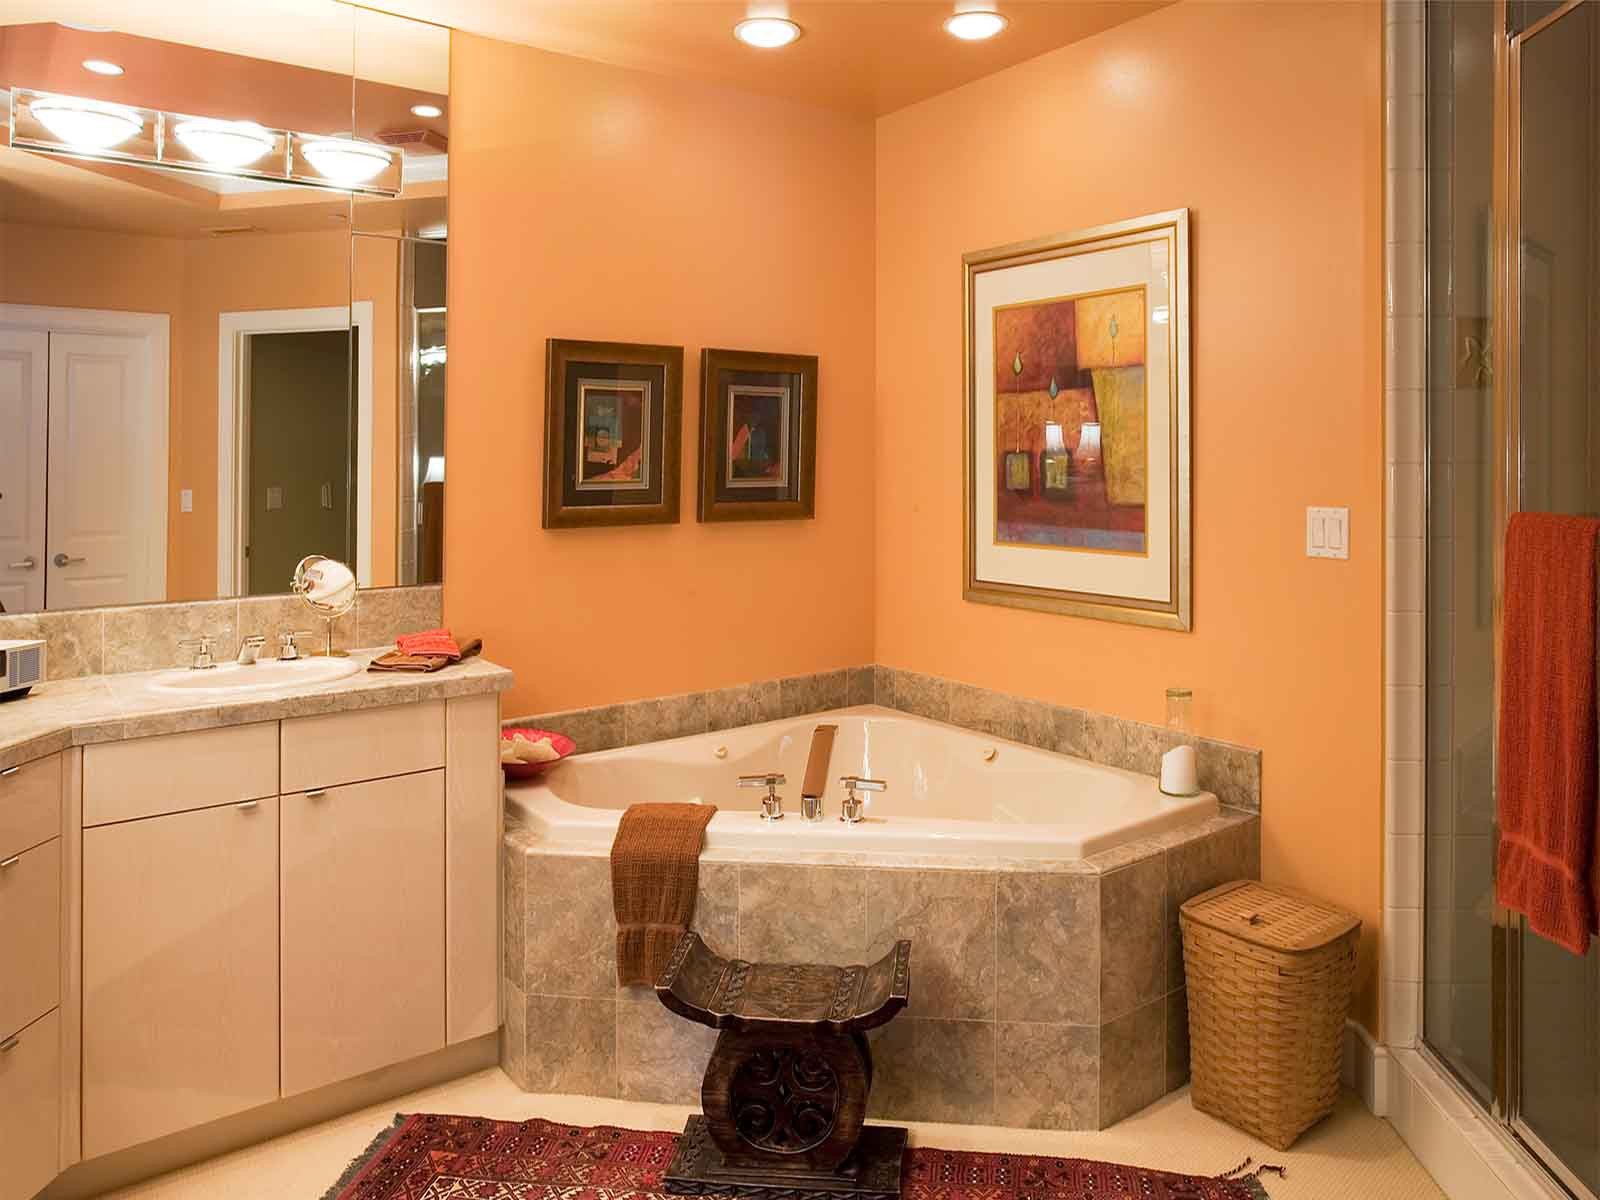 Kirkland Bathroom Vanities
 Bedrooms and Bathrooms Helga Simmons Interior Design